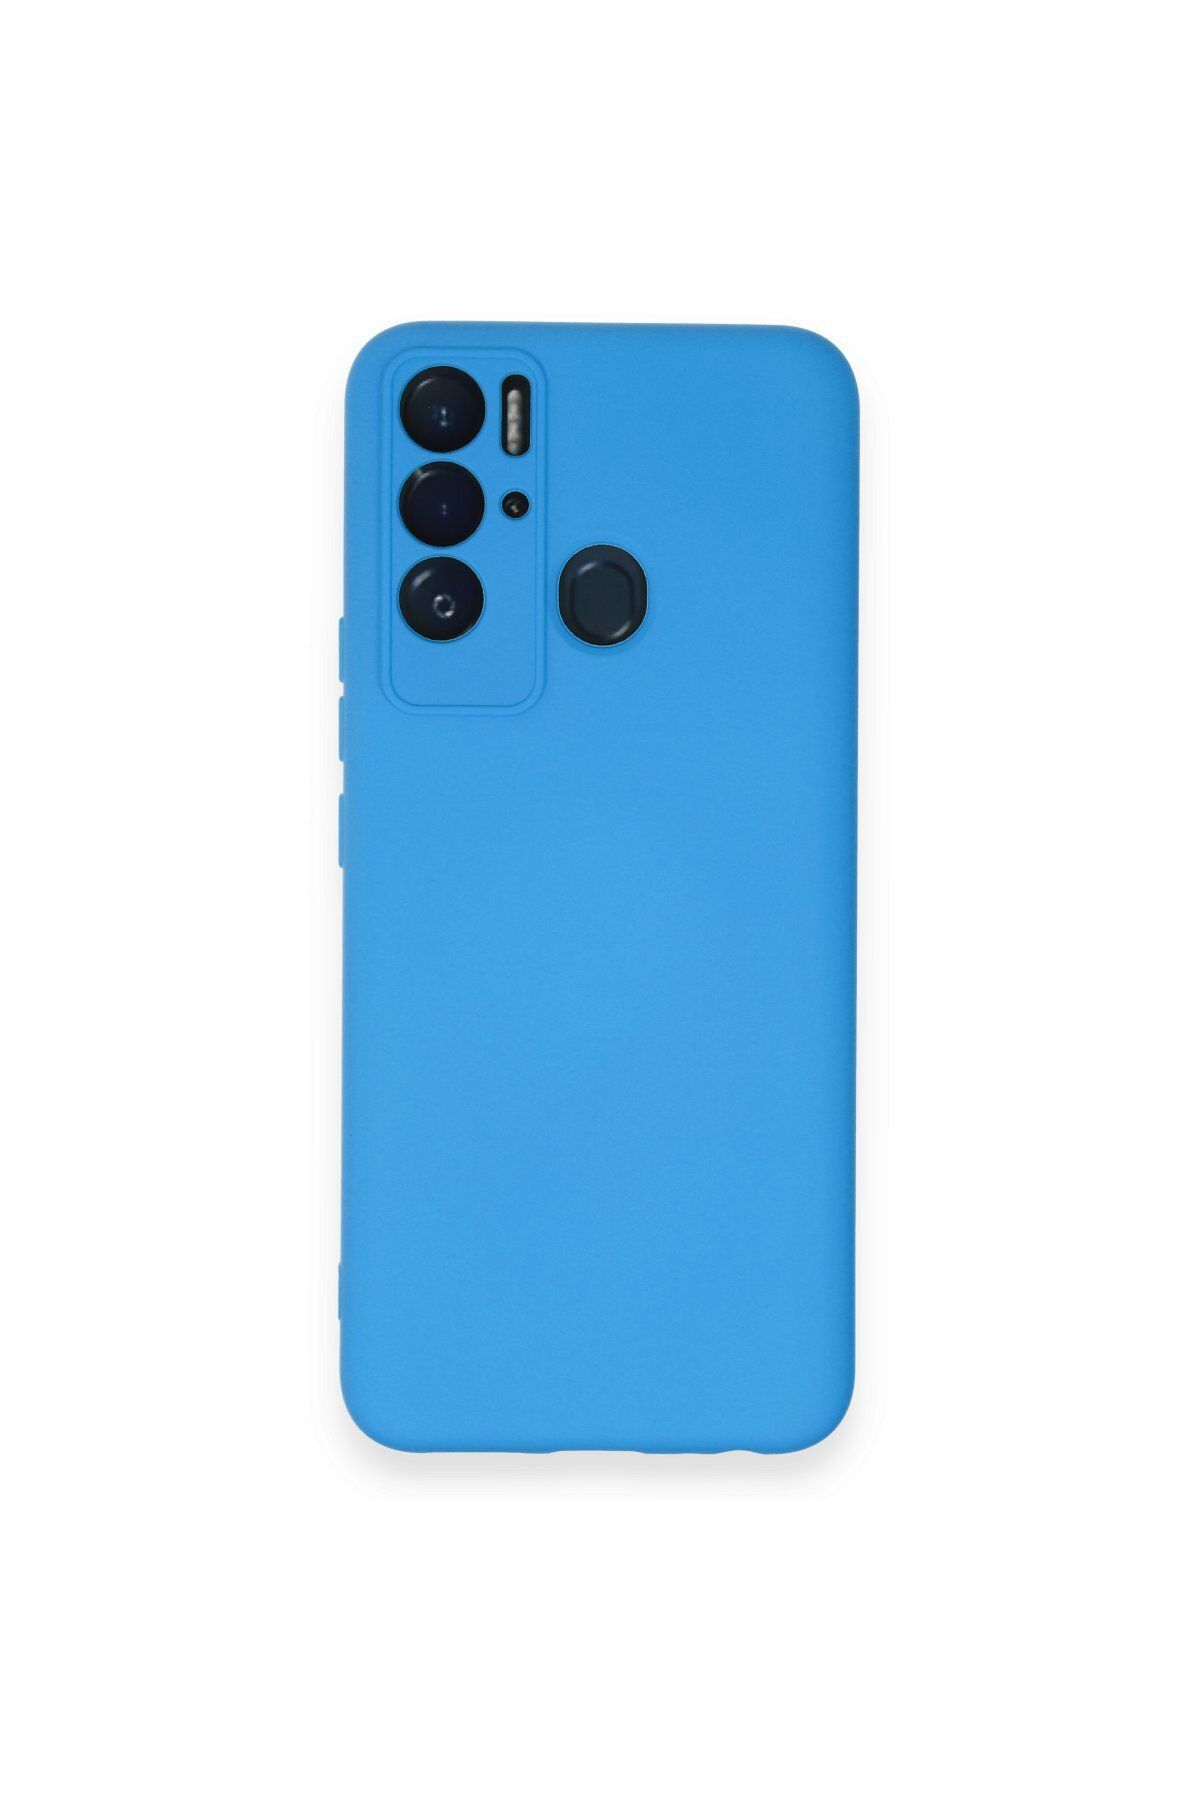 NewFace Tecno Pova Neo içi Süet Telefon Kılıfı - Soft Yüzey Kadife Silikon Kapak - Mavi